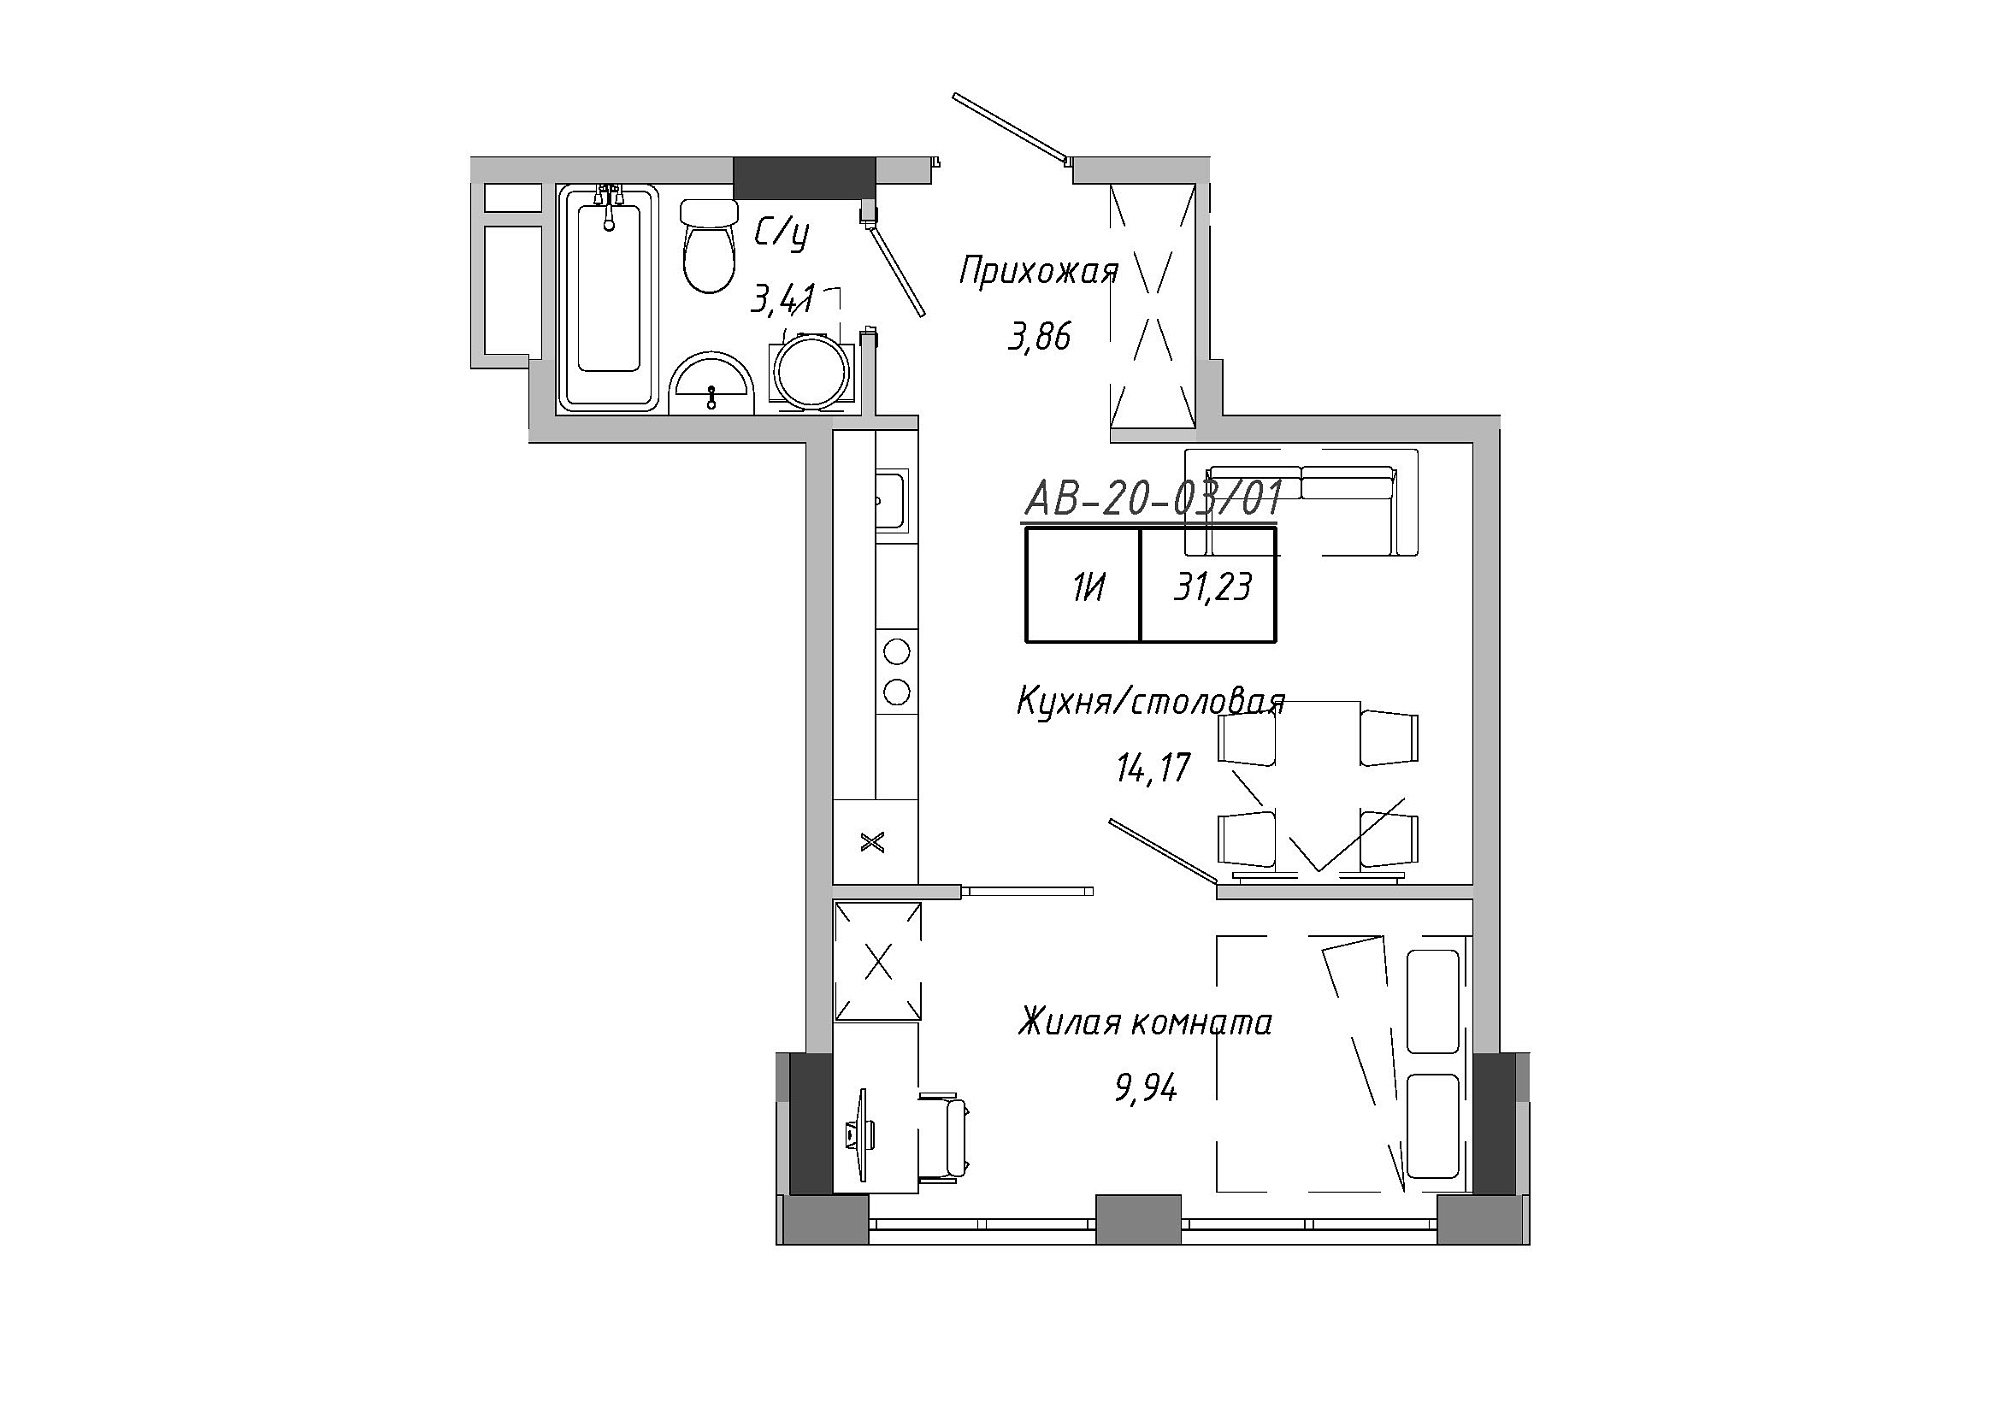 Планування 1-к квартира площею 31.23м2, AB-20-03/00001.